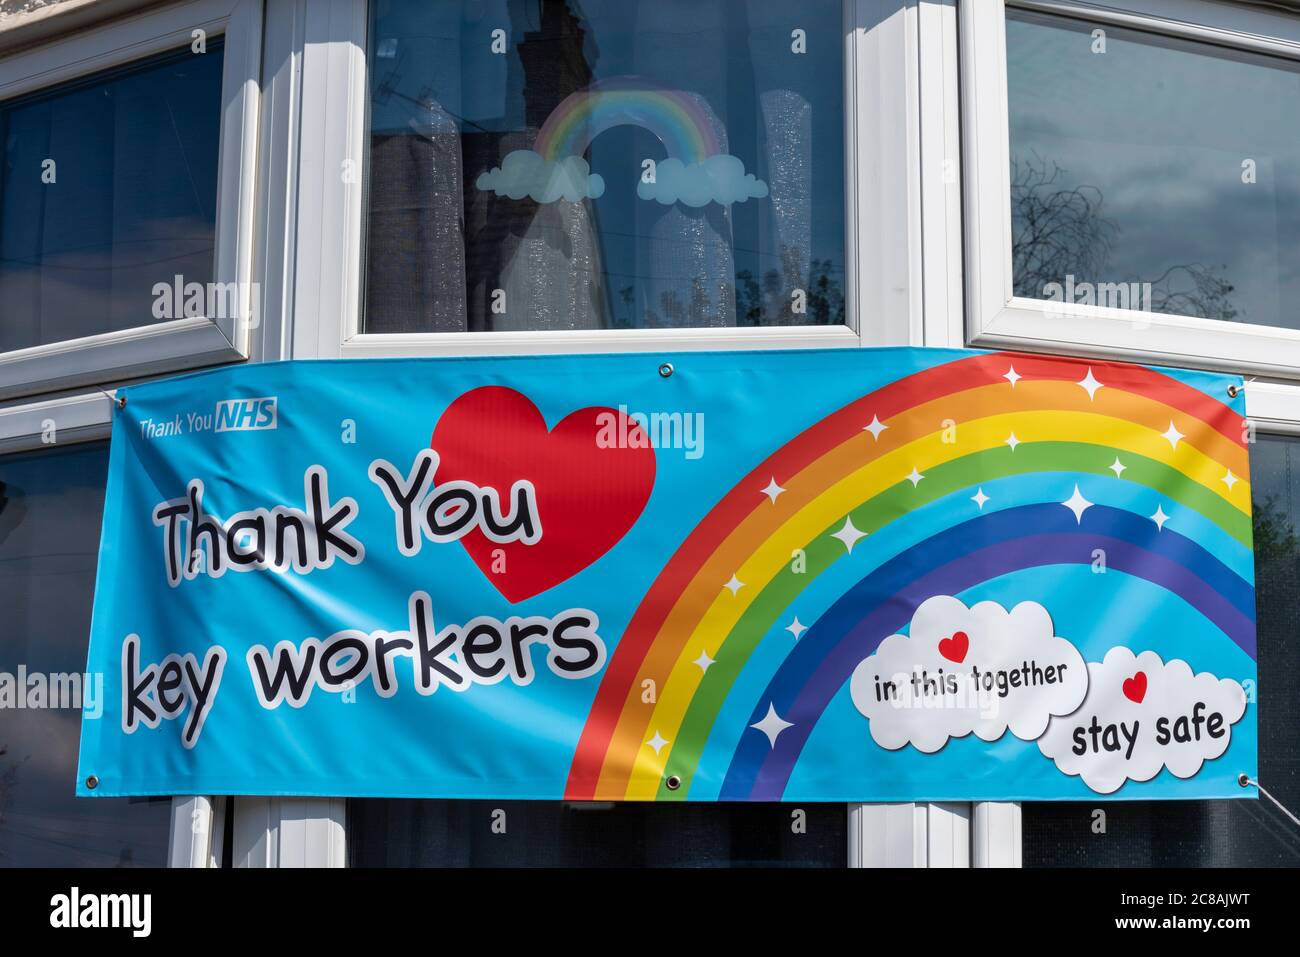 Gracias a los trabajadores clave, NHS, bandera del arco iris agradeciendo al Servicio Nacional de Salud y a los trabajadores clave. Ilustraciones fabricadas. En esto juntos, permanecer mensaje seguro Foto de stock